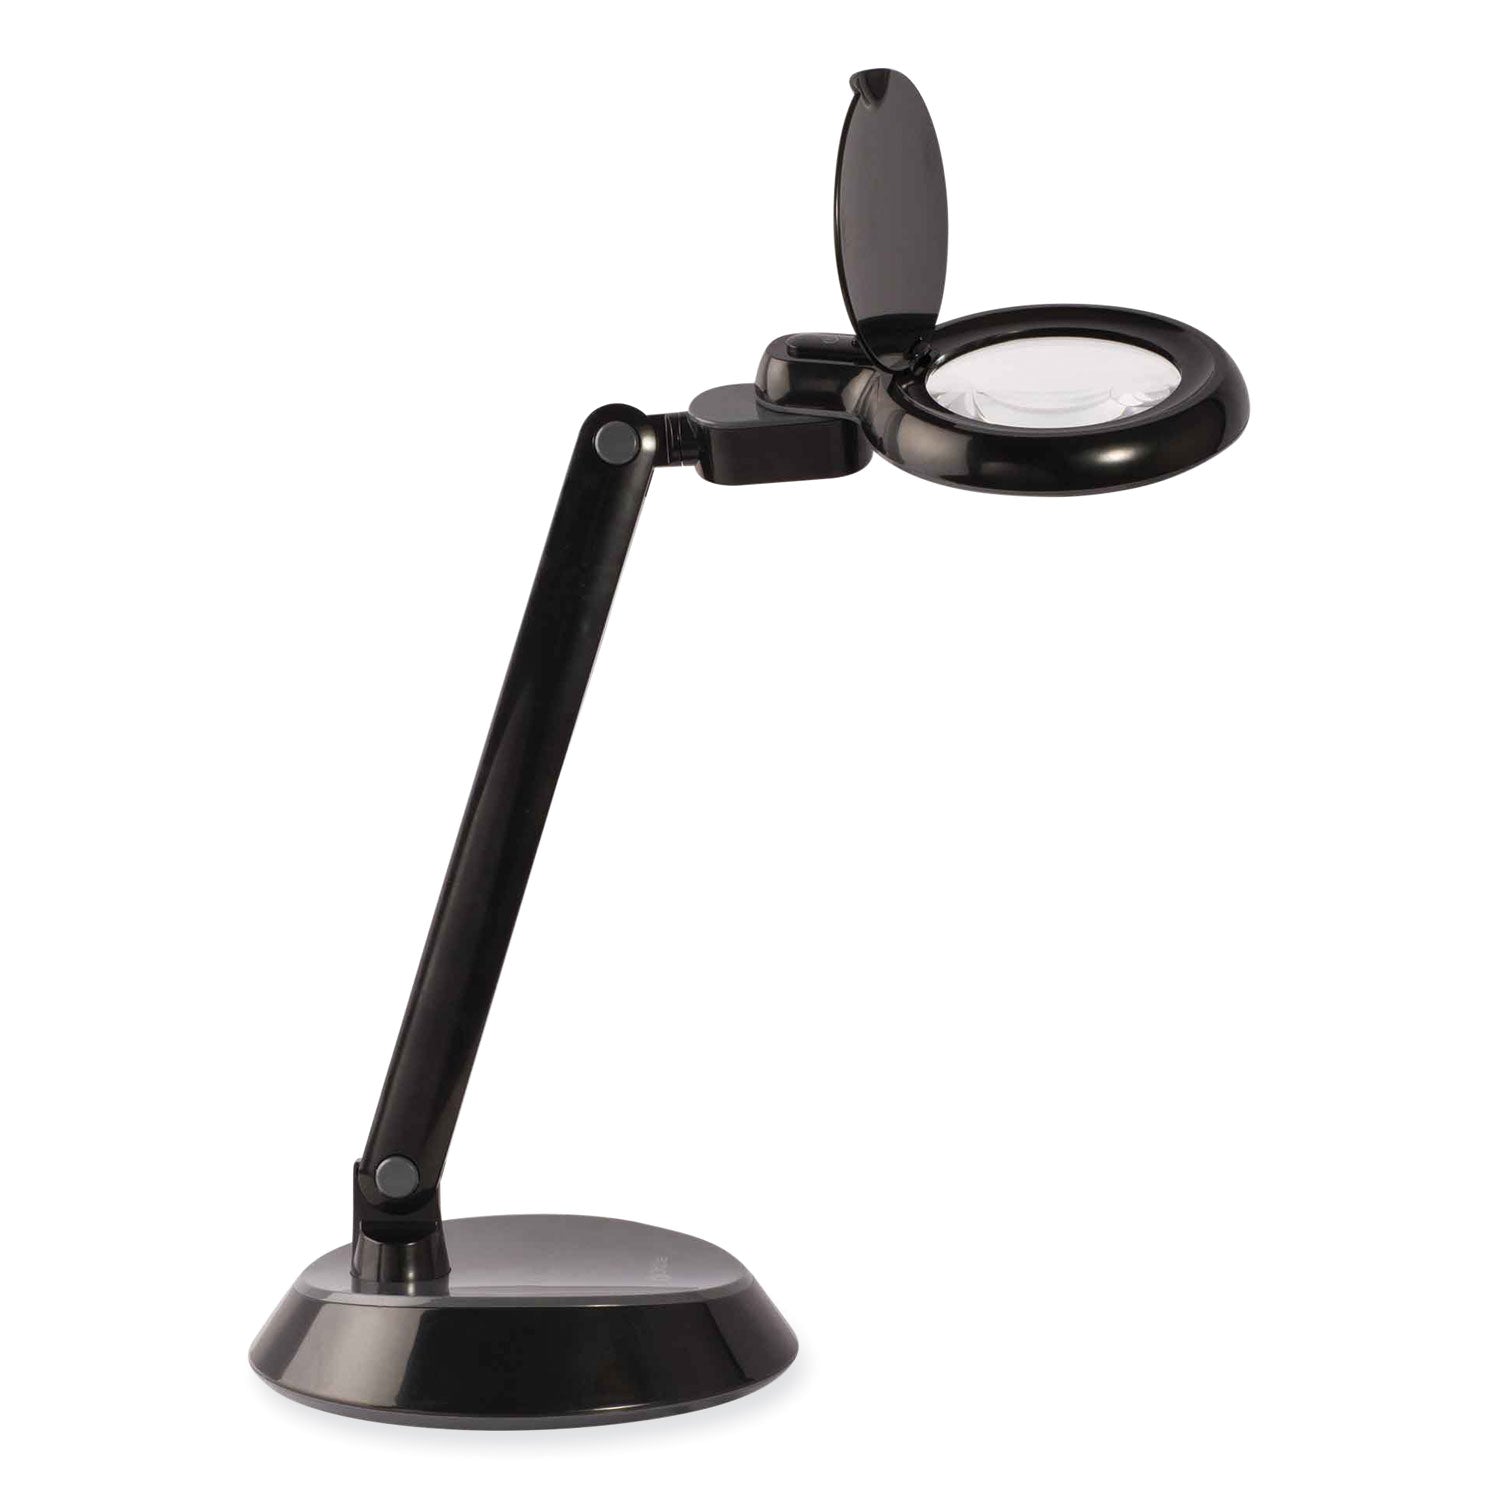 space-saving-led-magnifier-desk-lamp-14-high-black-ships-in-4-6-business-days_ottg97bgcffp - 1